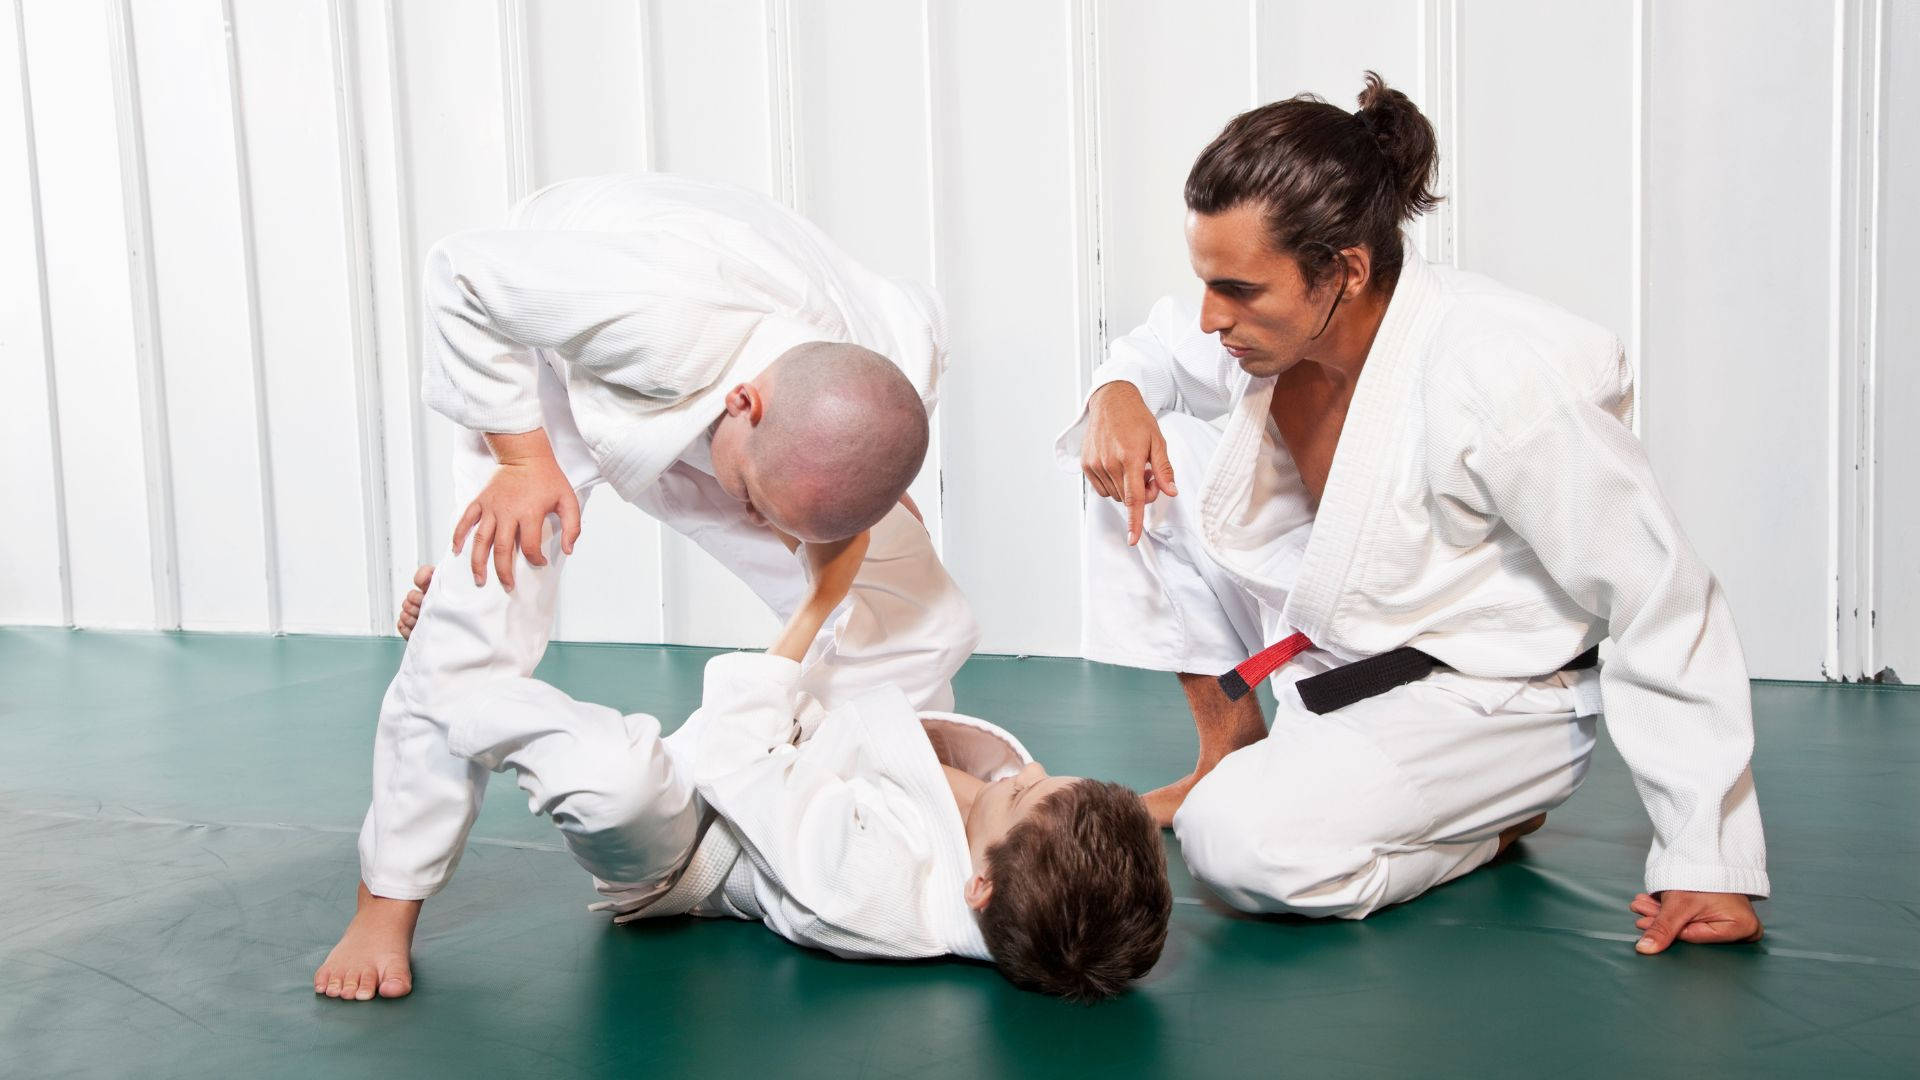 Brazilian Jiu-jitsu Martial Arts Kids Background